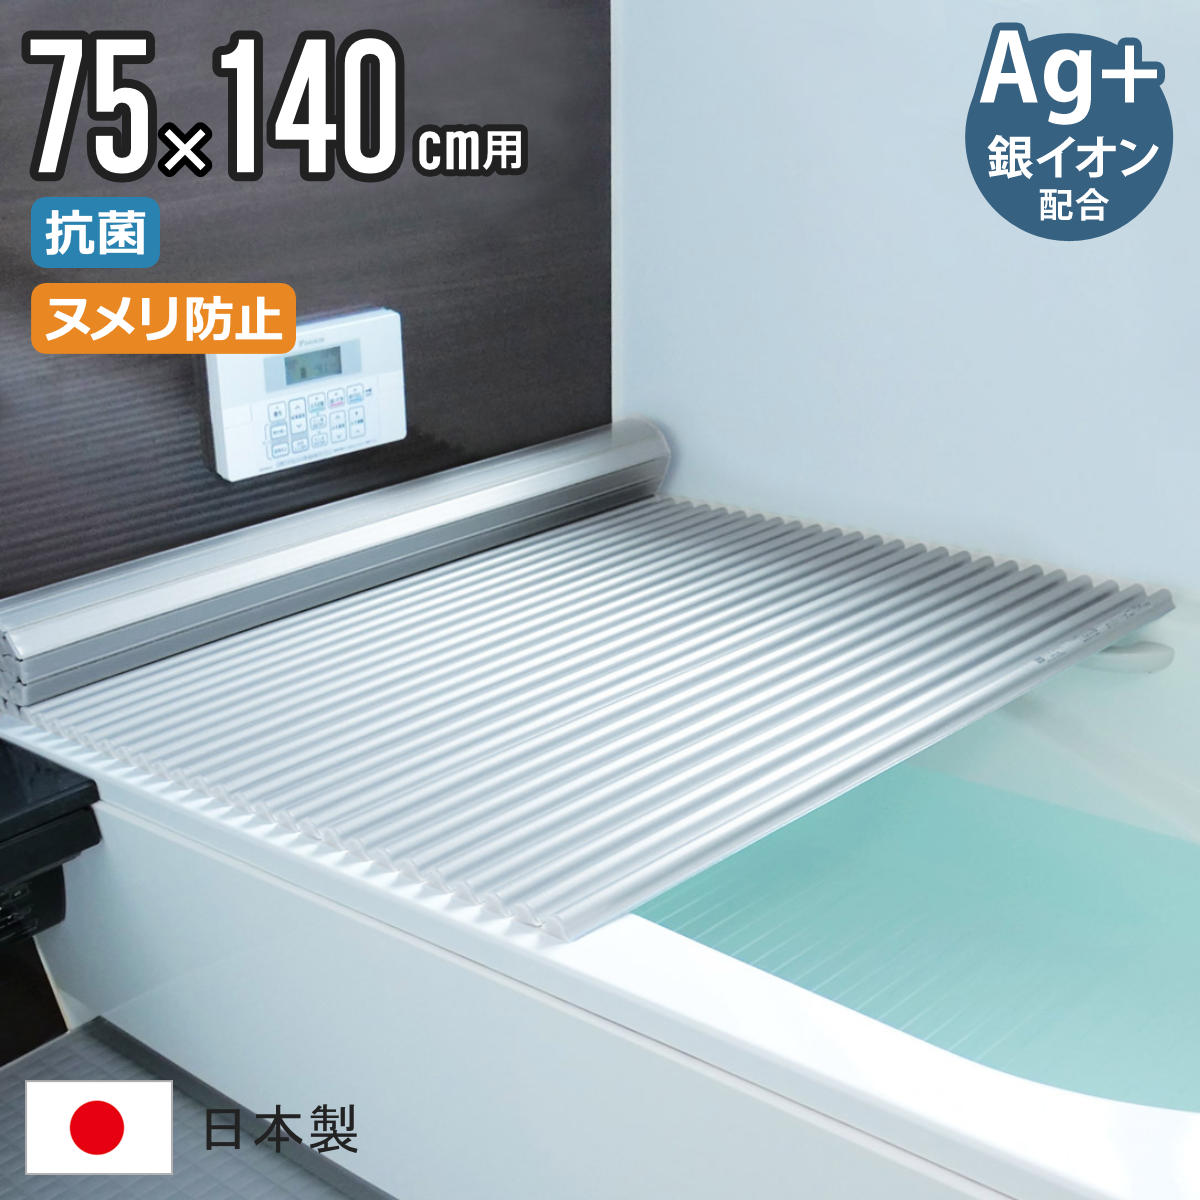 dショッピング |風呂ふた シャッター L14 75×140cm 用 Ag銀イオン 抗菌